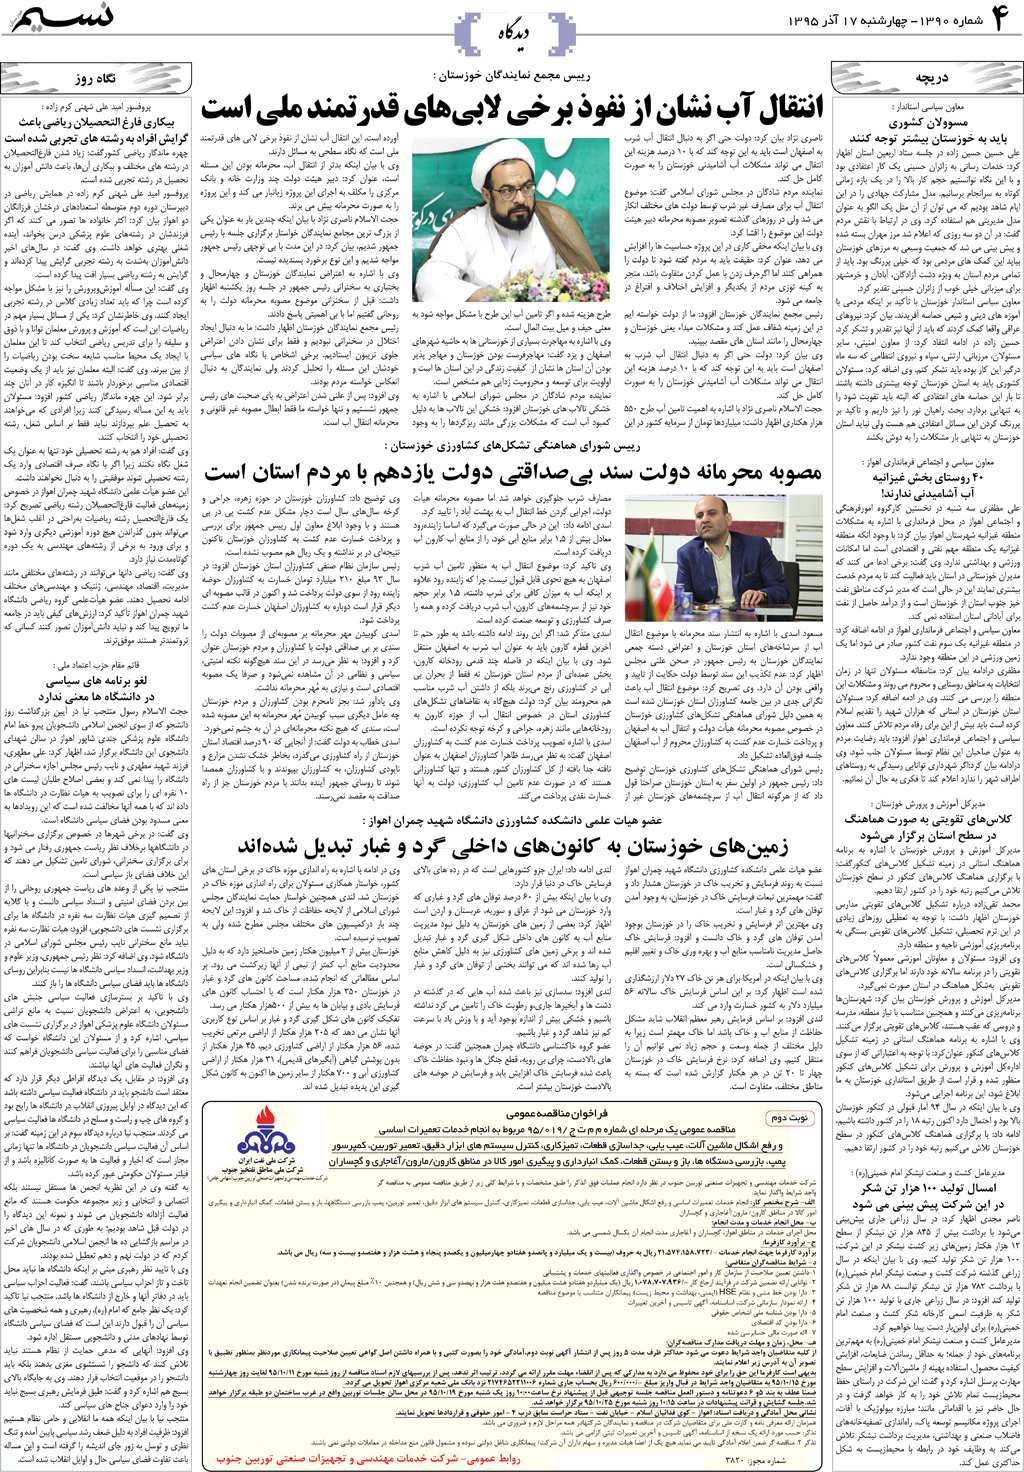 صفحه دیدگاه روزنامه نسیم شماره 1390